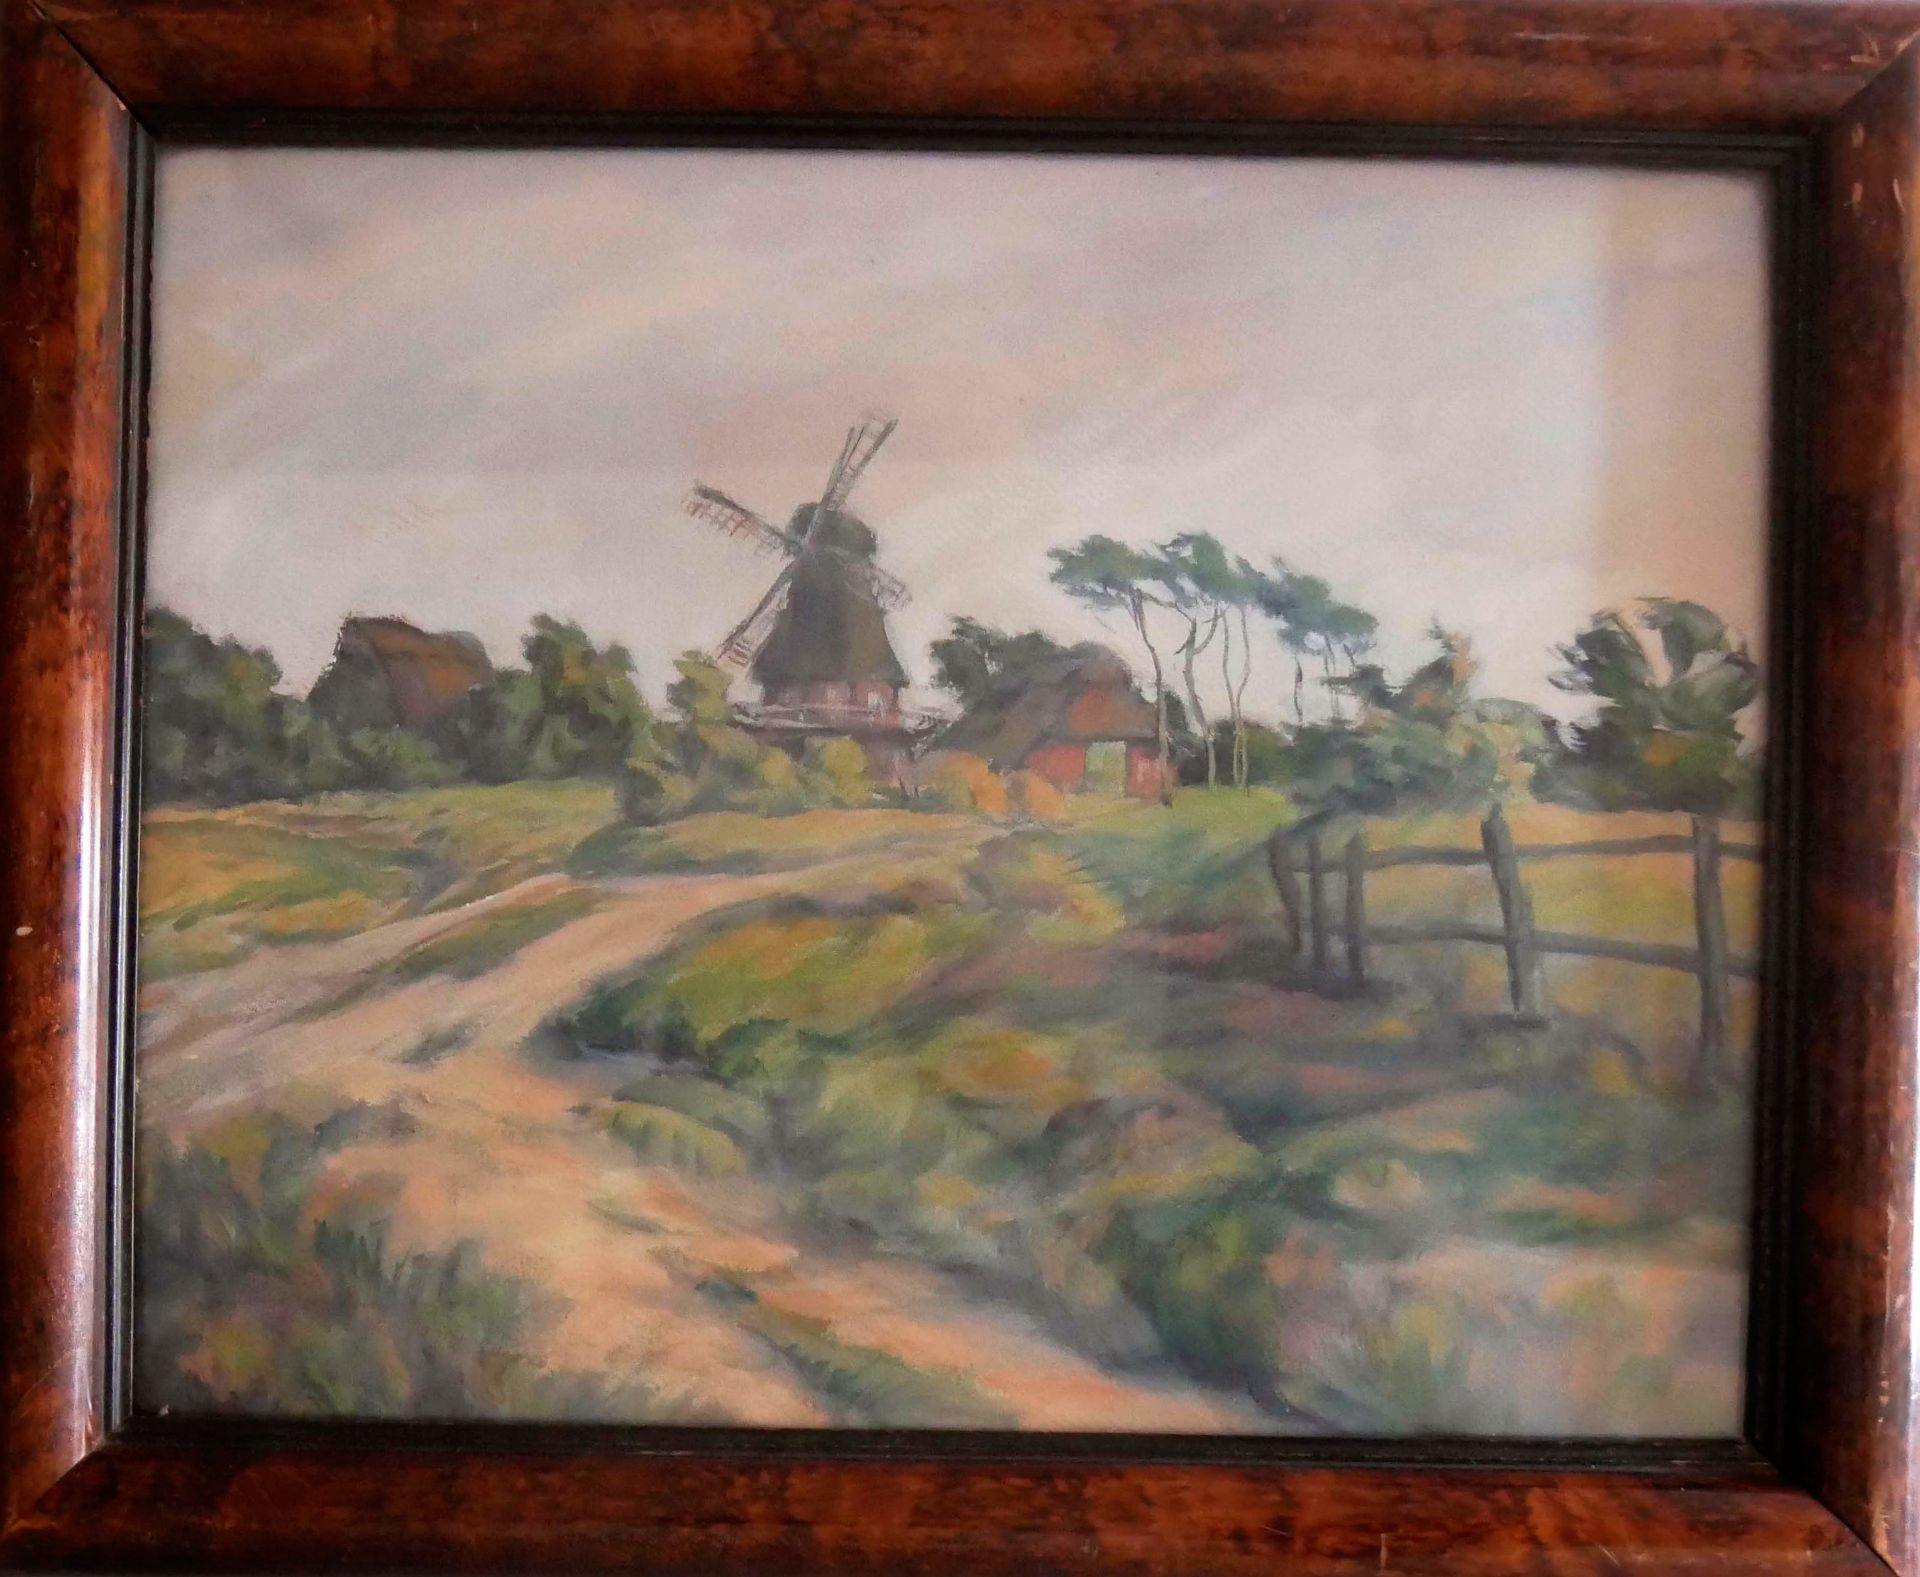 Gemälde "Windmühle", von Hans Engelmeyer, 1924, hinter Glas gerahmt, Maße (inkl. Rahmen) ca.: Breite